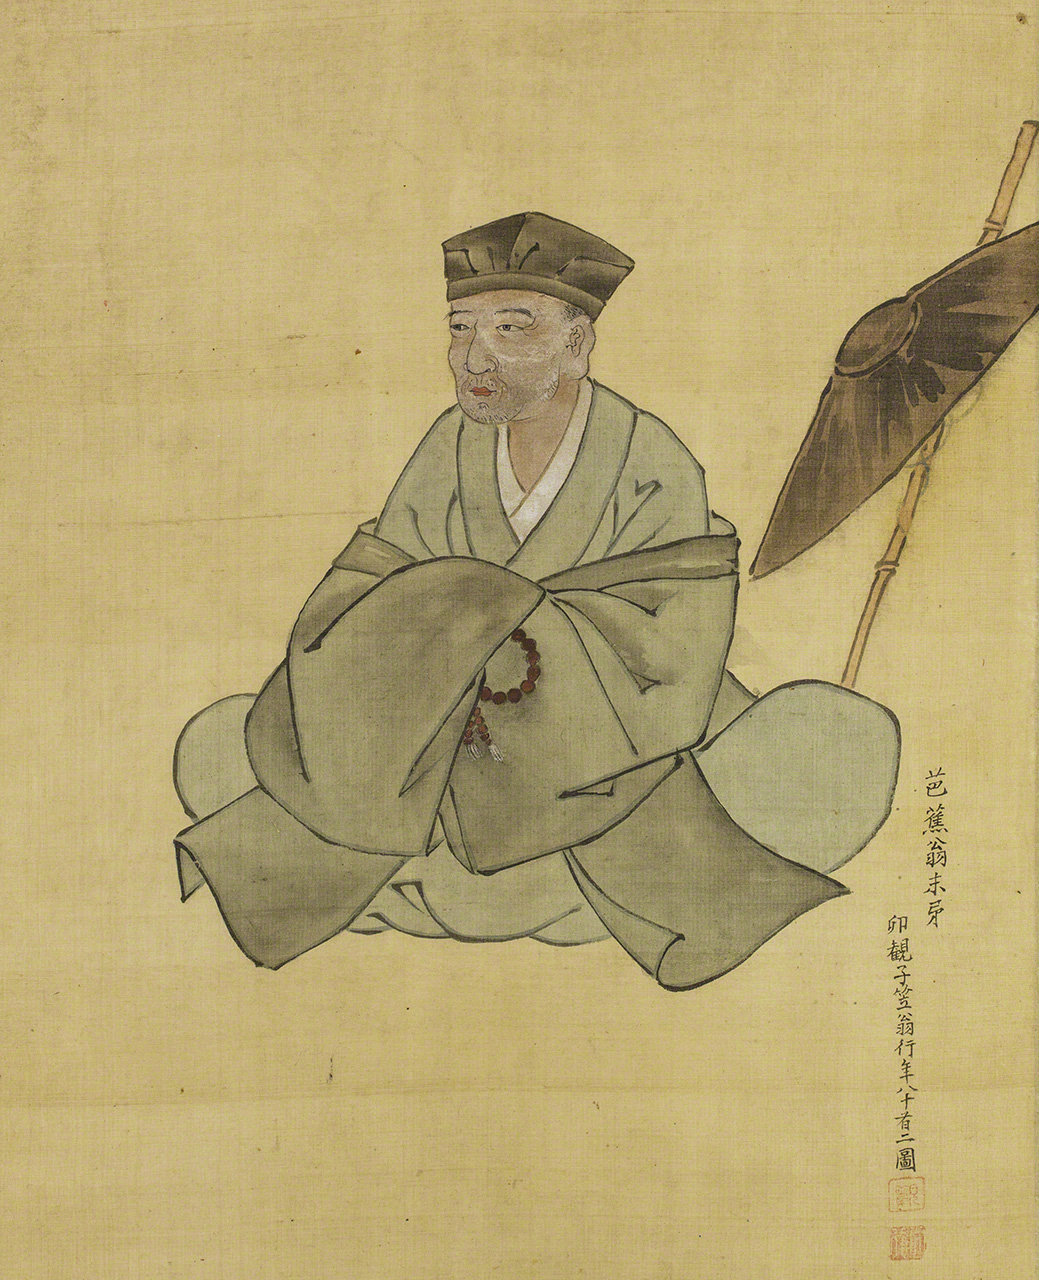 小川破笠的《芭蕉翁像》。小川破笠是江户中期的画师、漆工，也是芭蕉的门人。这是一幅由亲近之人描绘的肖像画（图片：芭蕉翁纪念馆藏）